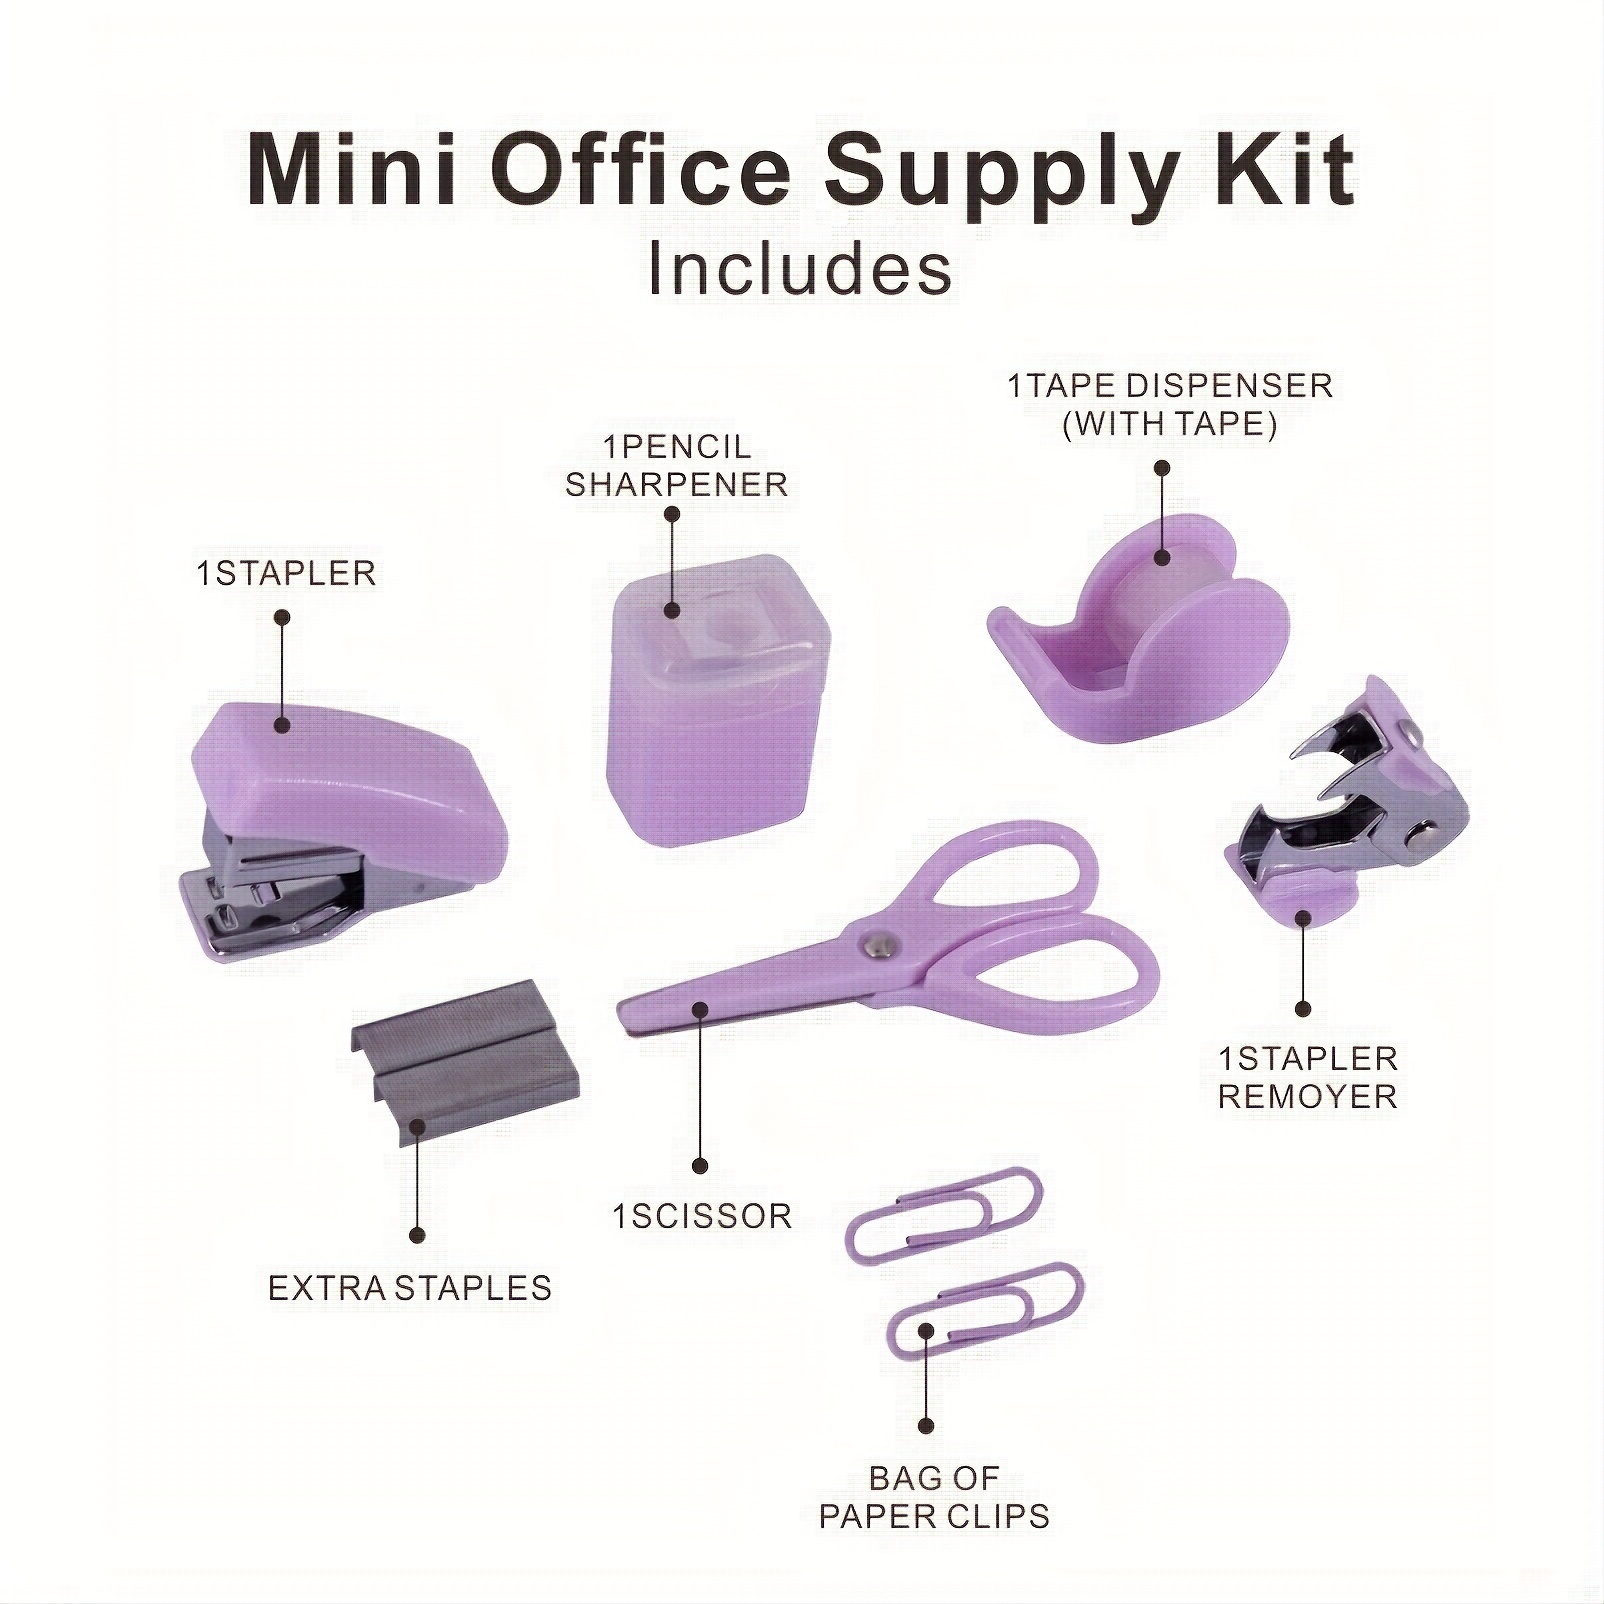 Mini Office Supply Kit